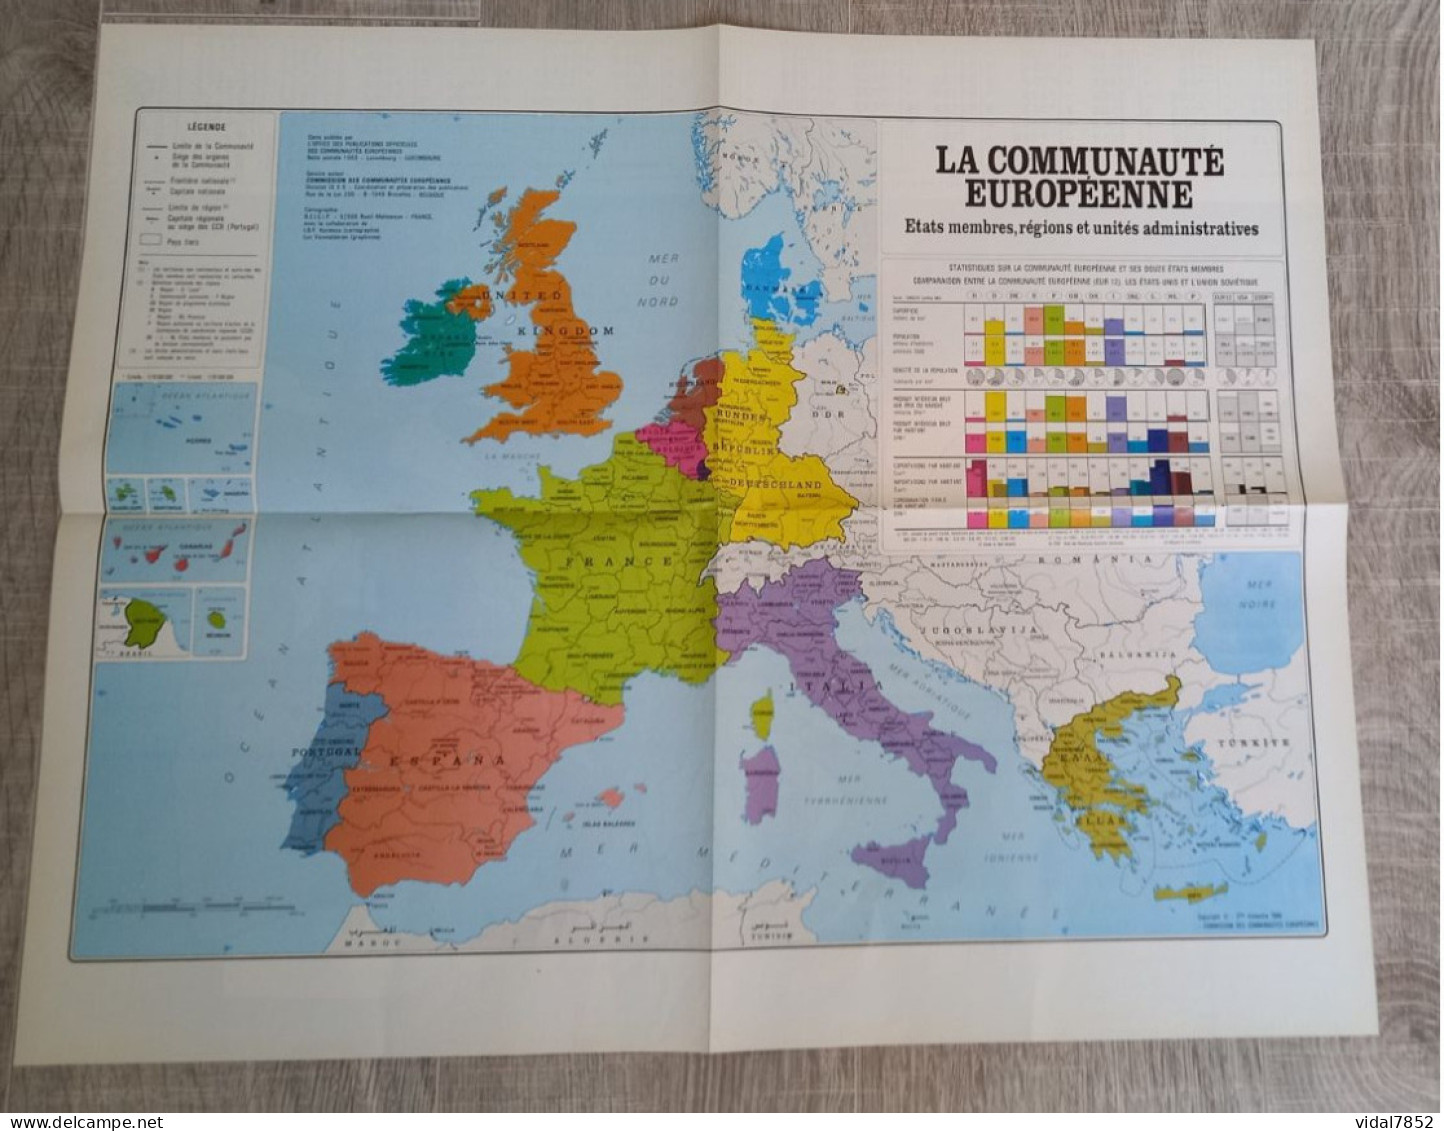 Calendrier-Almanach Des P.T.T 1991-Poster Intérieur Communauté Européenne--Tom Jerry Département AIN-01-Référence 414 - Big : 1991-00